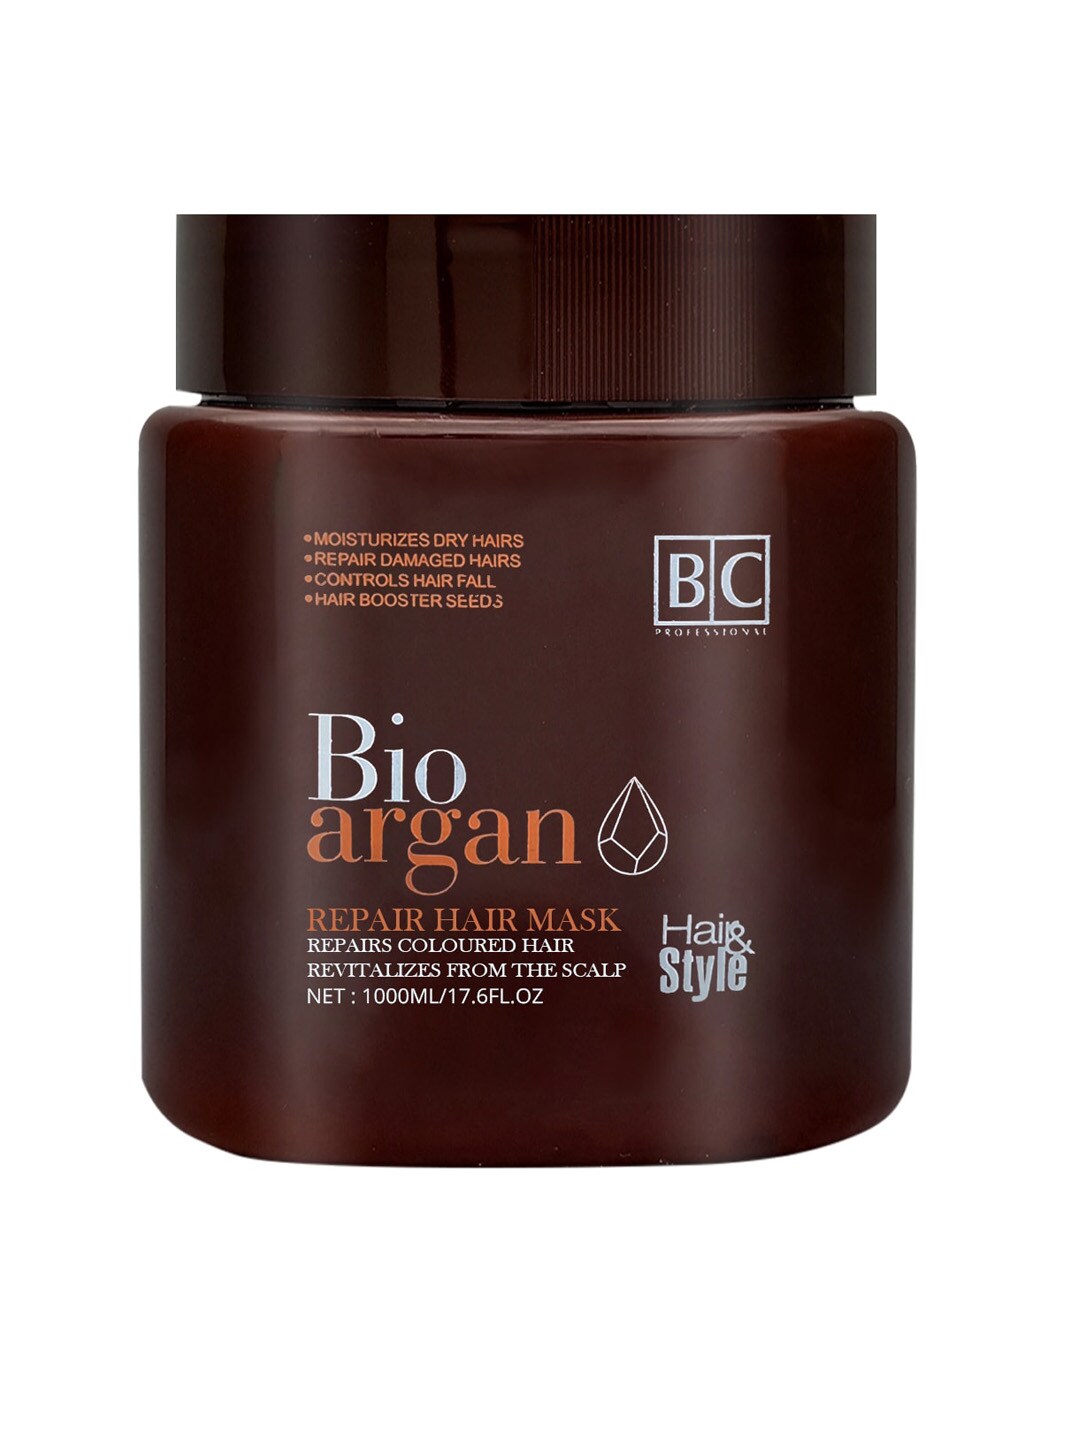 Berina Bio Argan Oil Hair Repair Mask - 1000ml Price in India